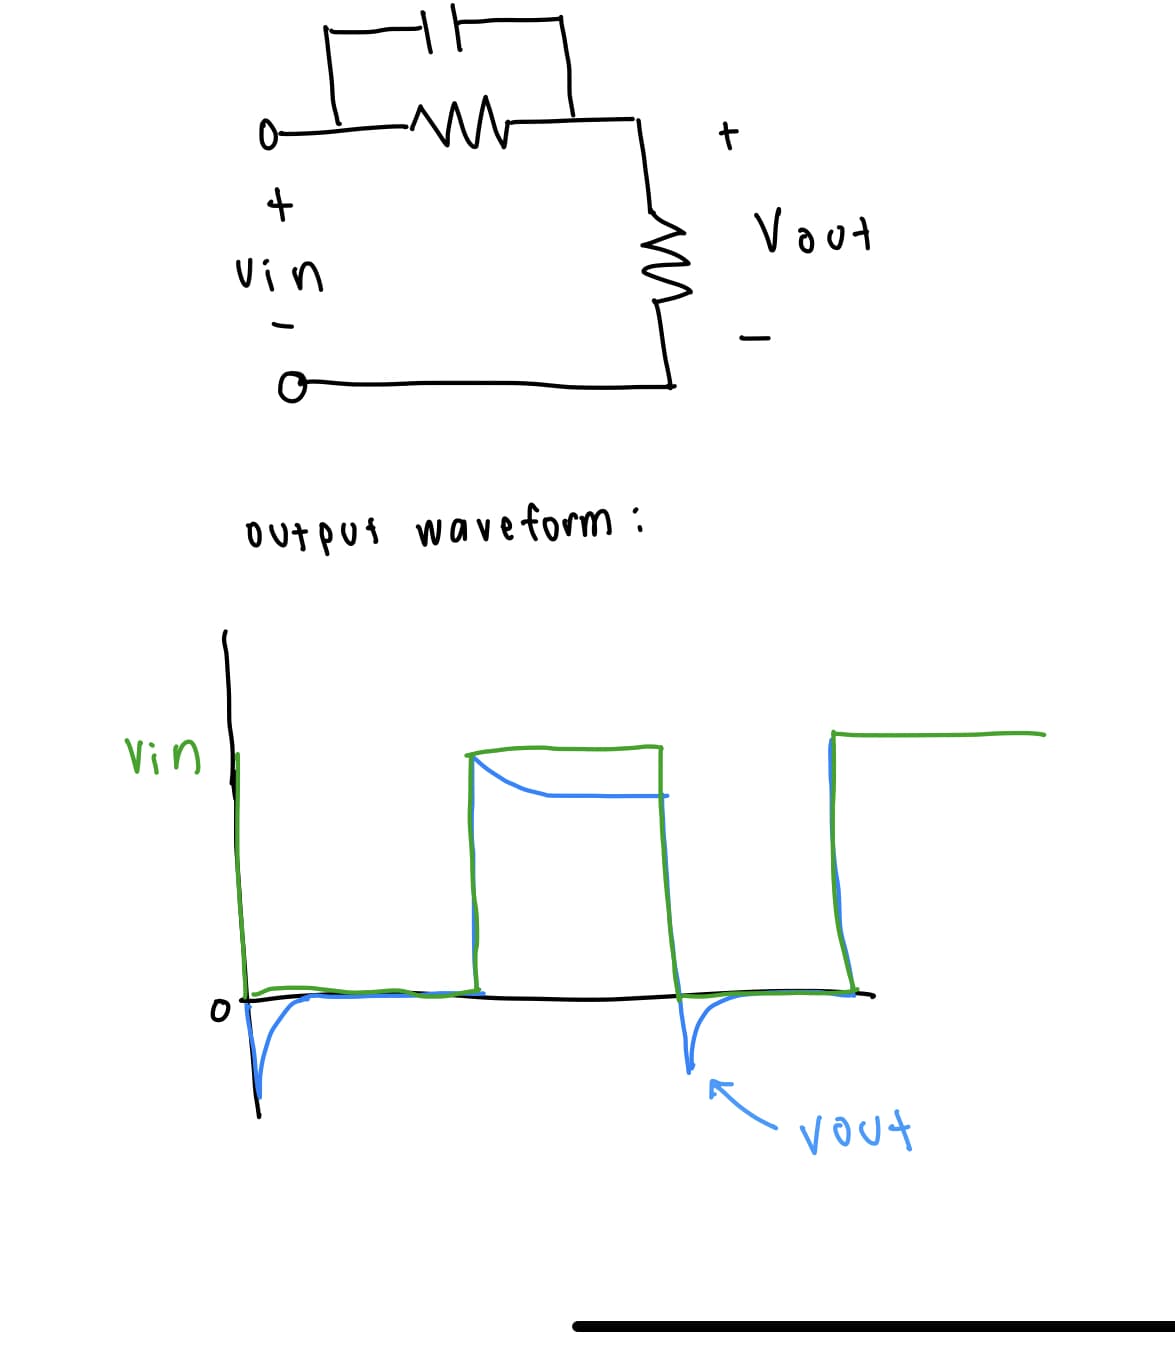 Vin
+
vin
o
M
m
output waveform:
+
Vout
vout